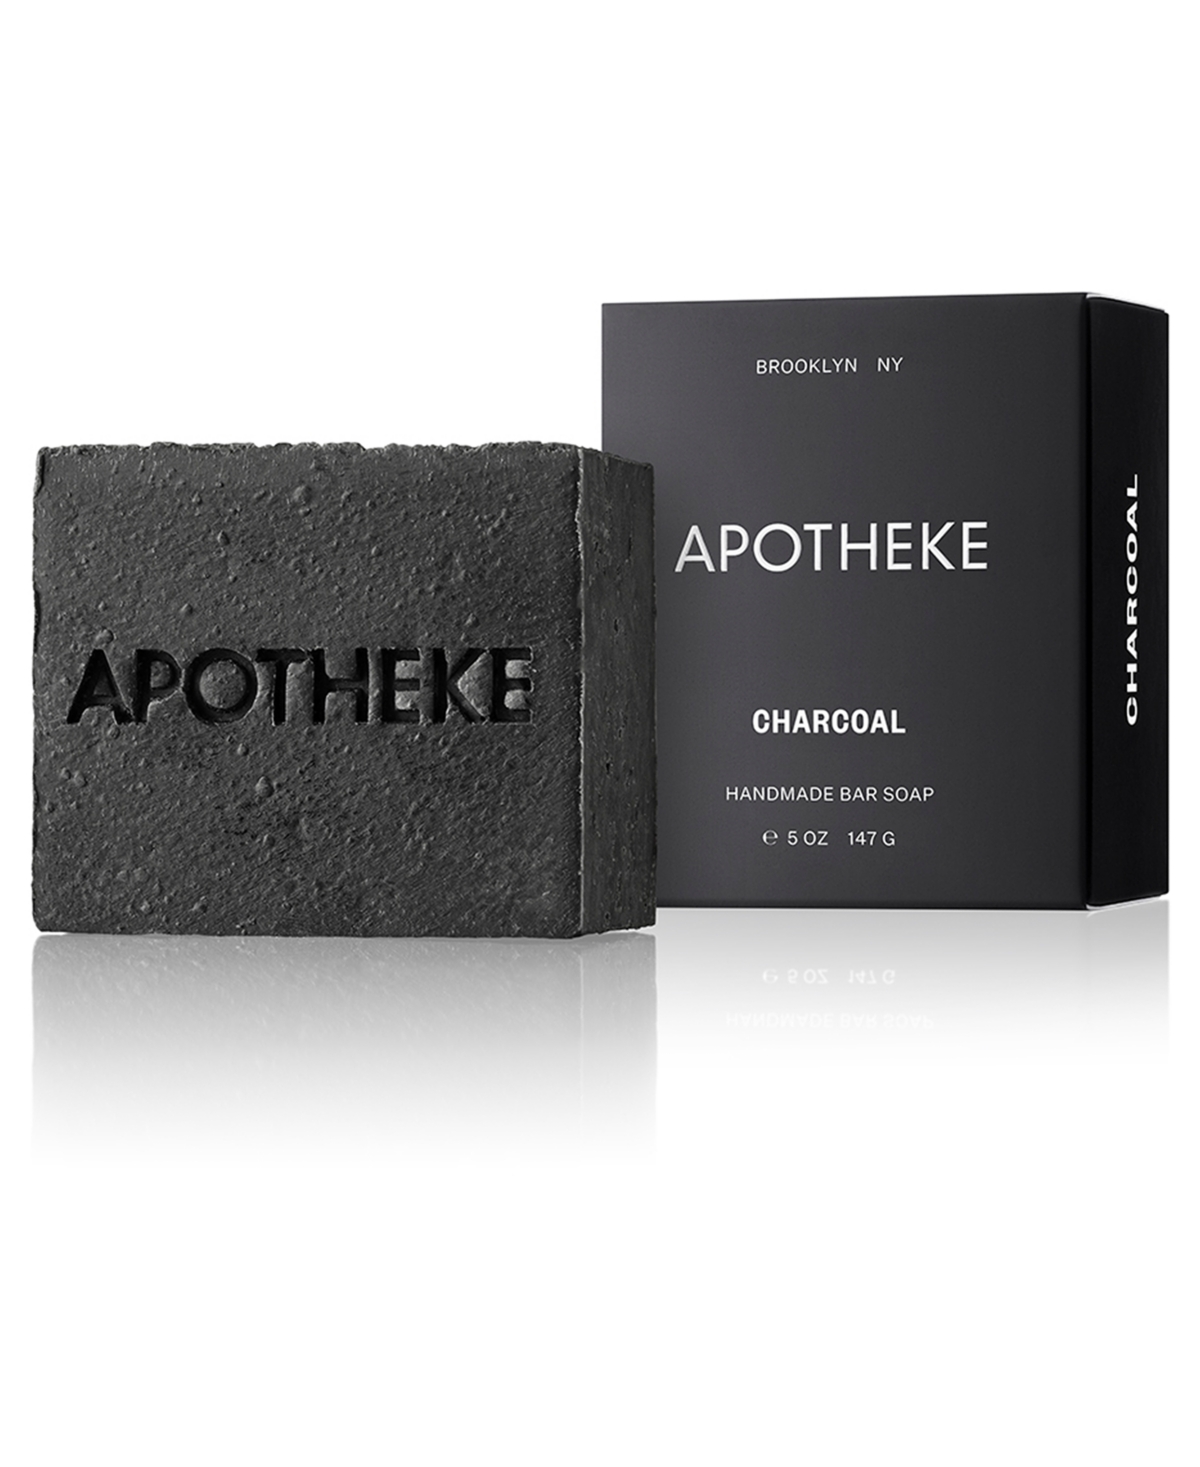 Apotheke Charcoal Bar Soap, 5-oz.